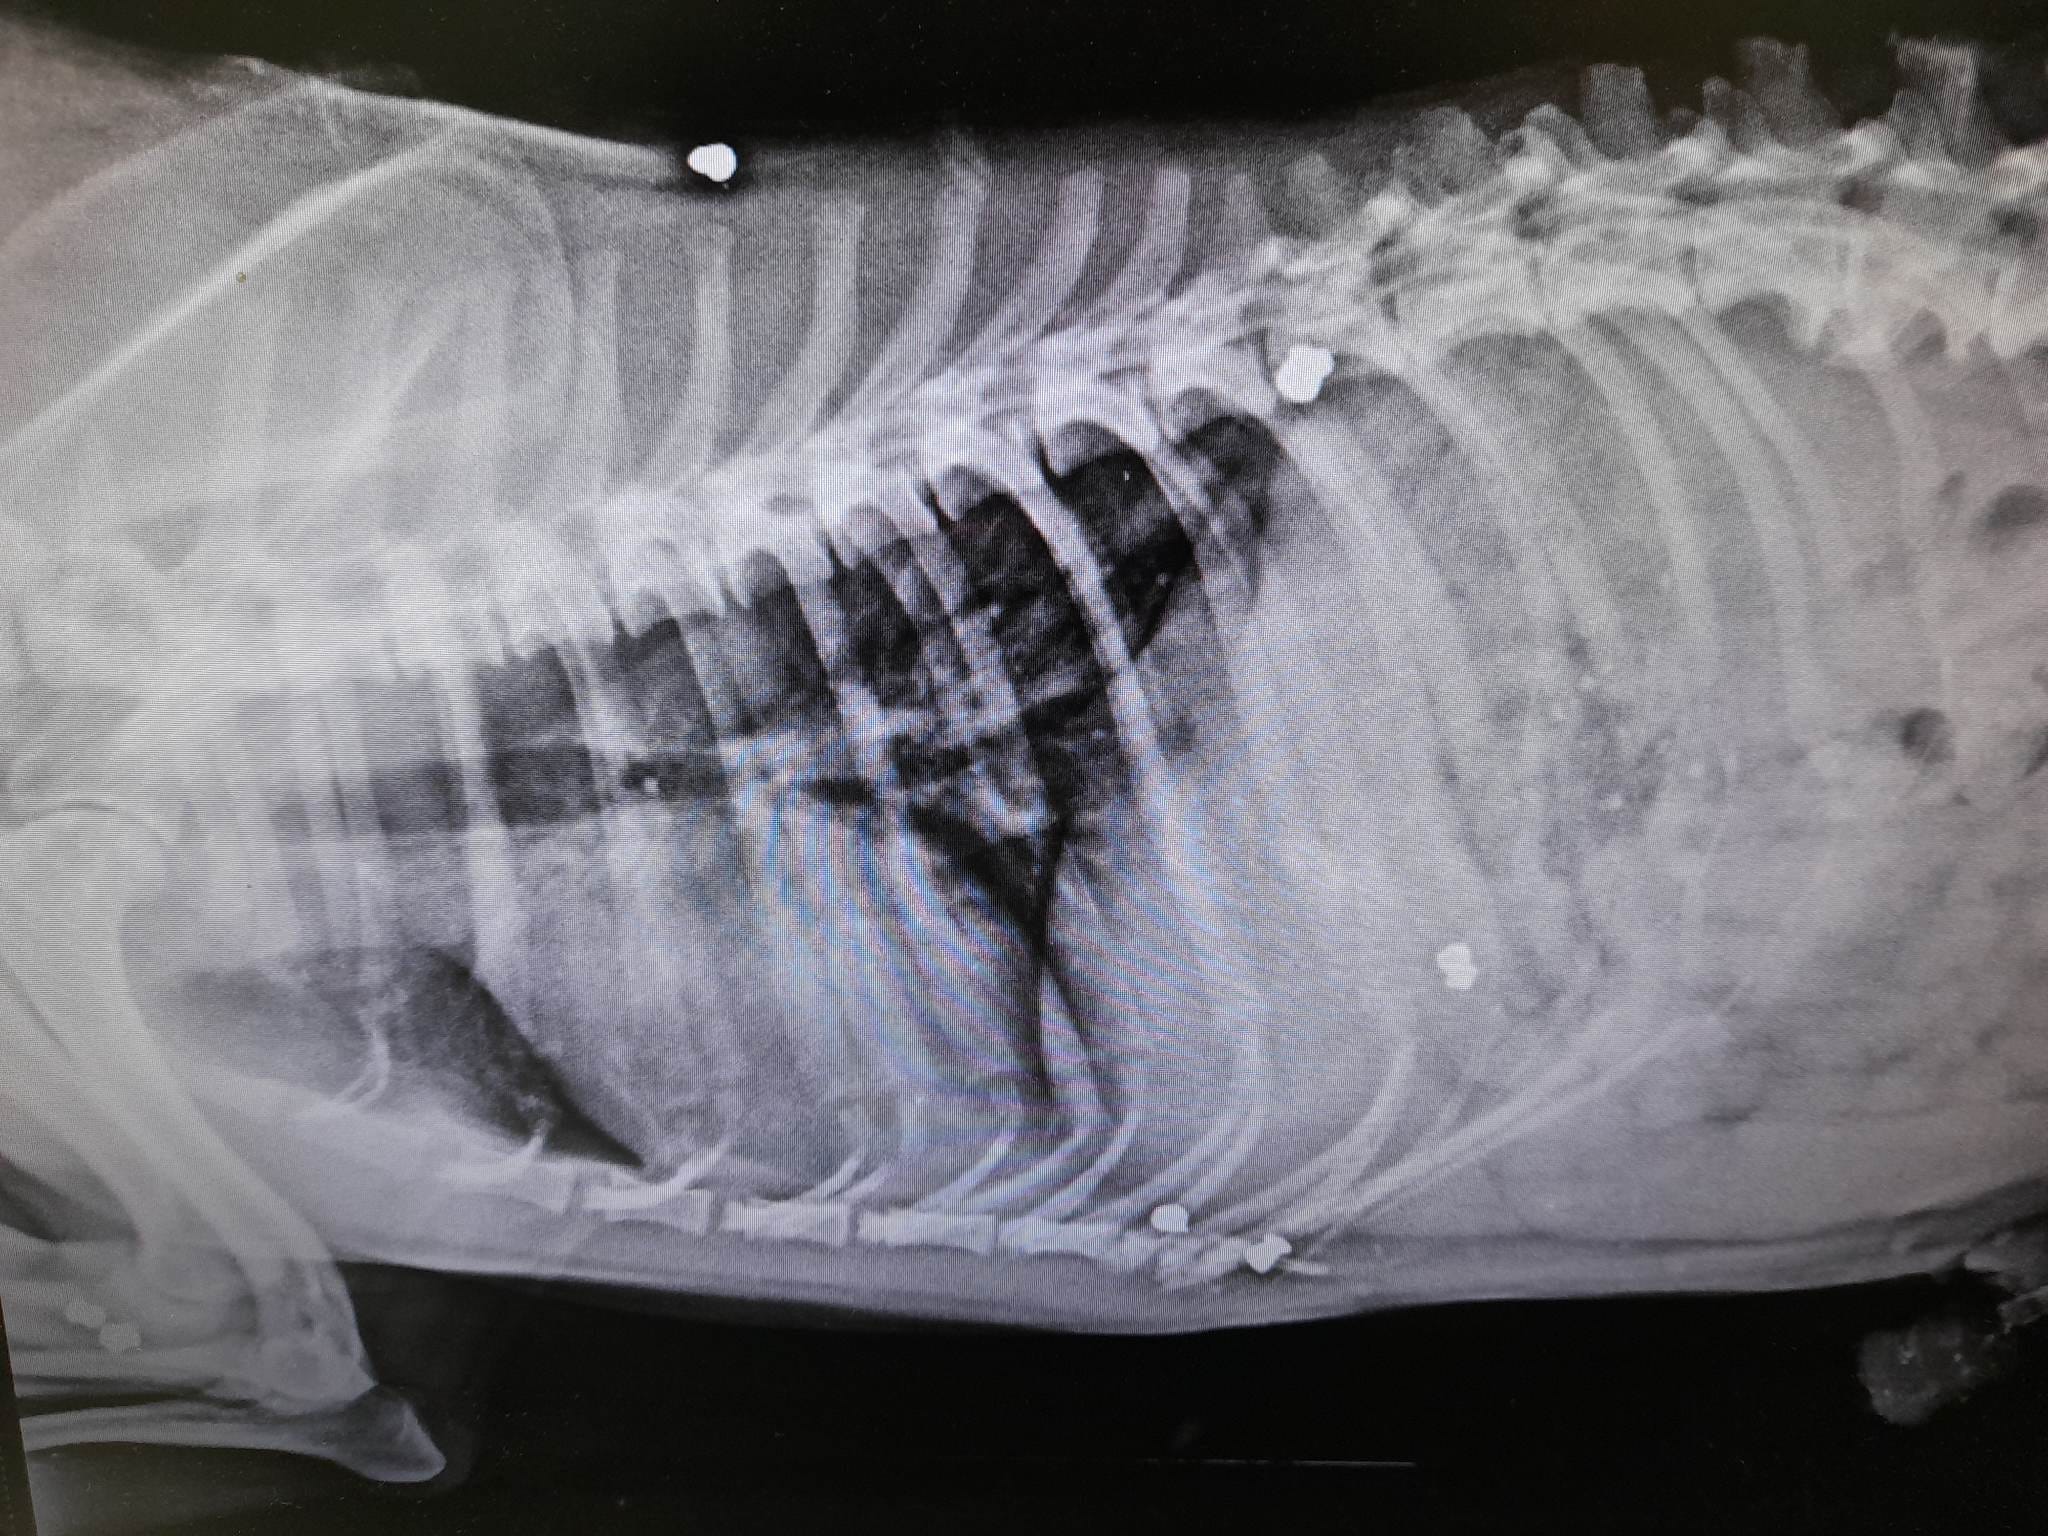 Σέρρες: Σκότωσαν σκύλο και τον πέταξαν στα σκουπίδια – Η ακτινογραφία μετά την κτηνωδία